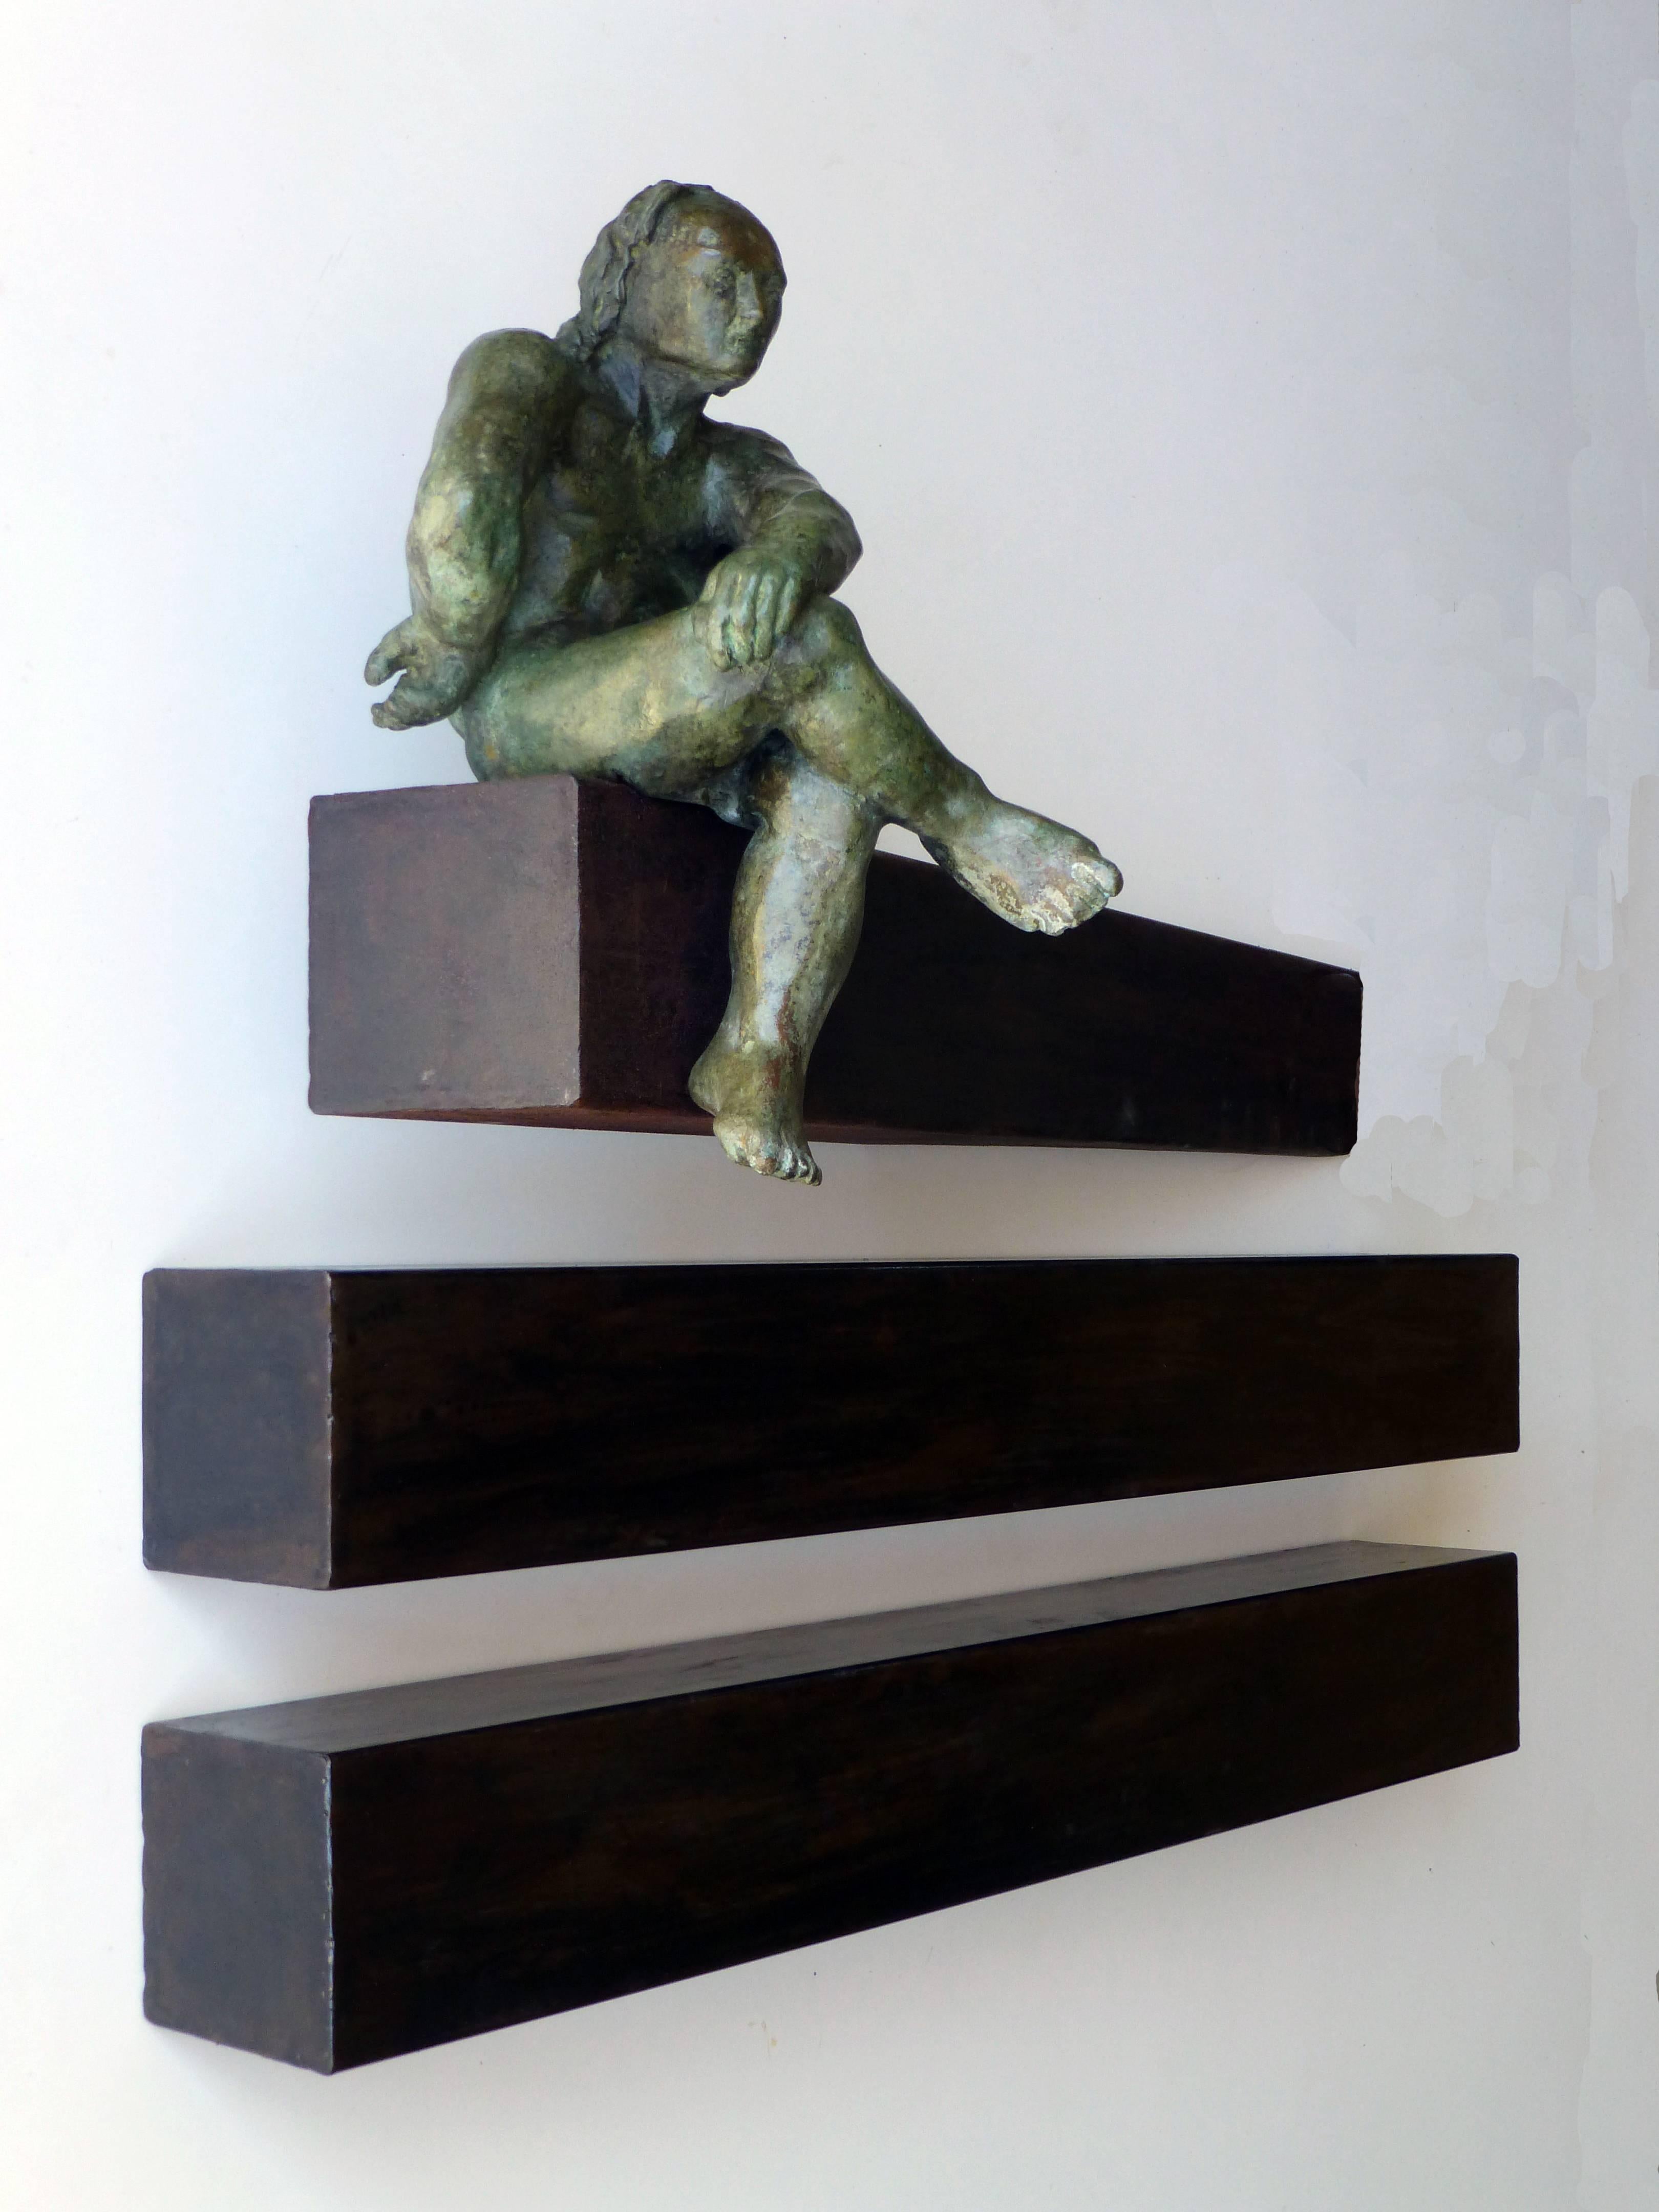 Skulptur des spanischen Künstlers AMANCIO GONZALEZ
Bronze.
Die Länge der horizontalen Balken kann nach Belieben verändert werden
Fantastisches Kunstwerk der spanischen Bildhauerei
Sehr populärer Künstler in Europa und Lateinamerika
AMANCIO Gonzalez